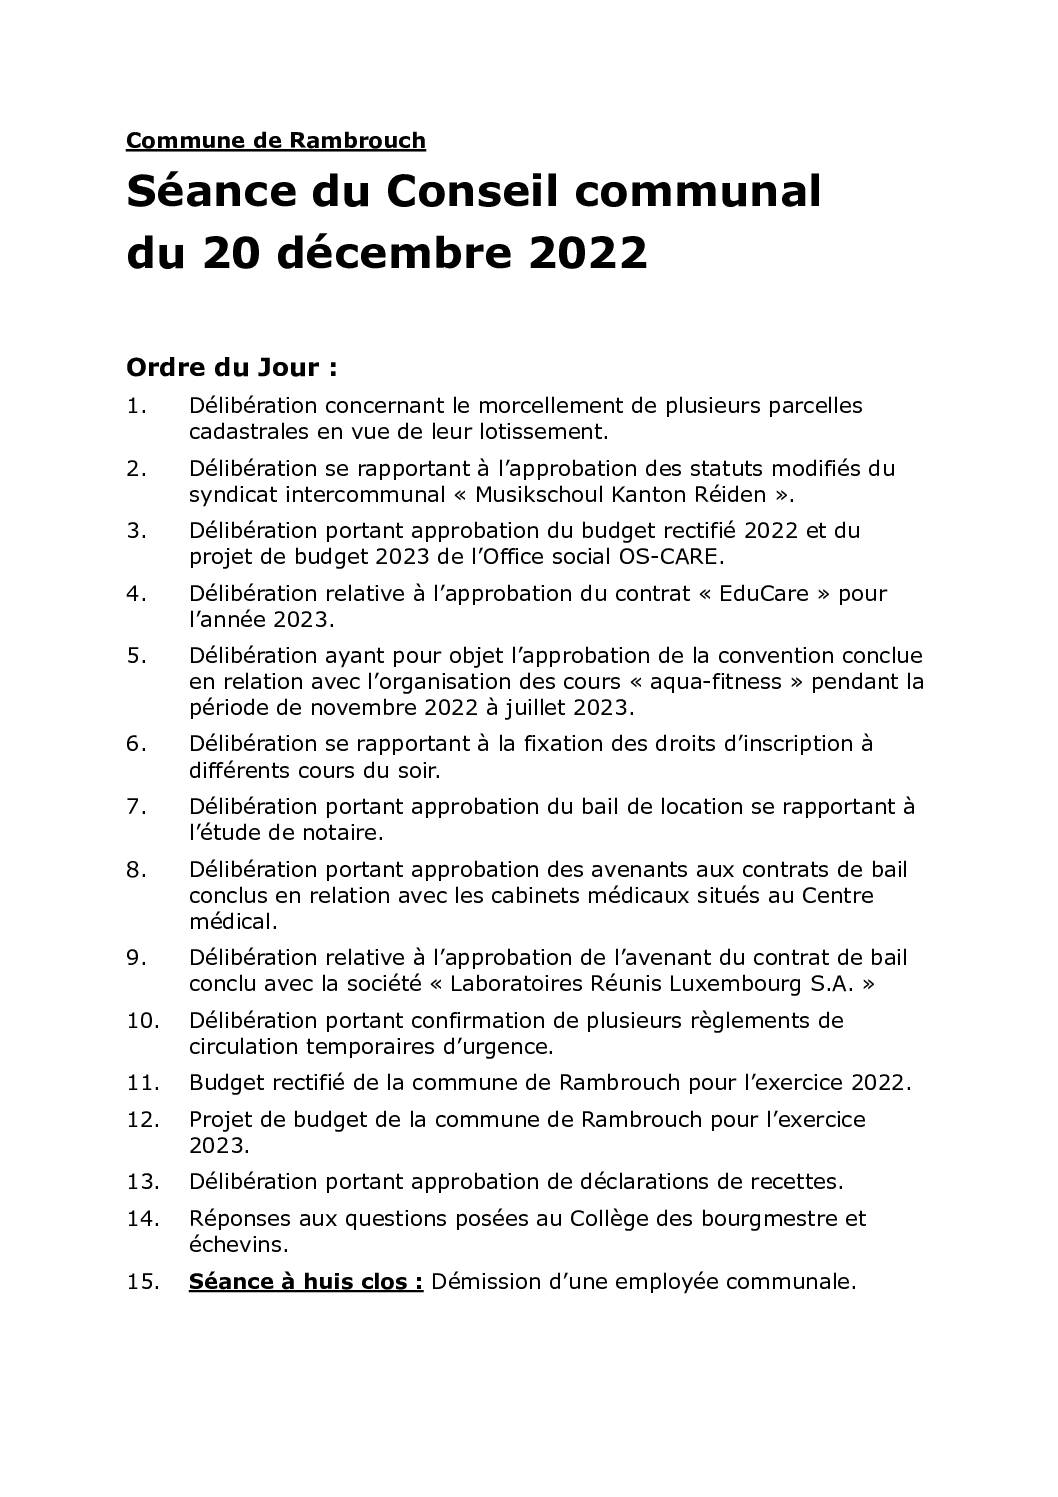 Rapport du cnoseil communal du 20.12.2022 (français)